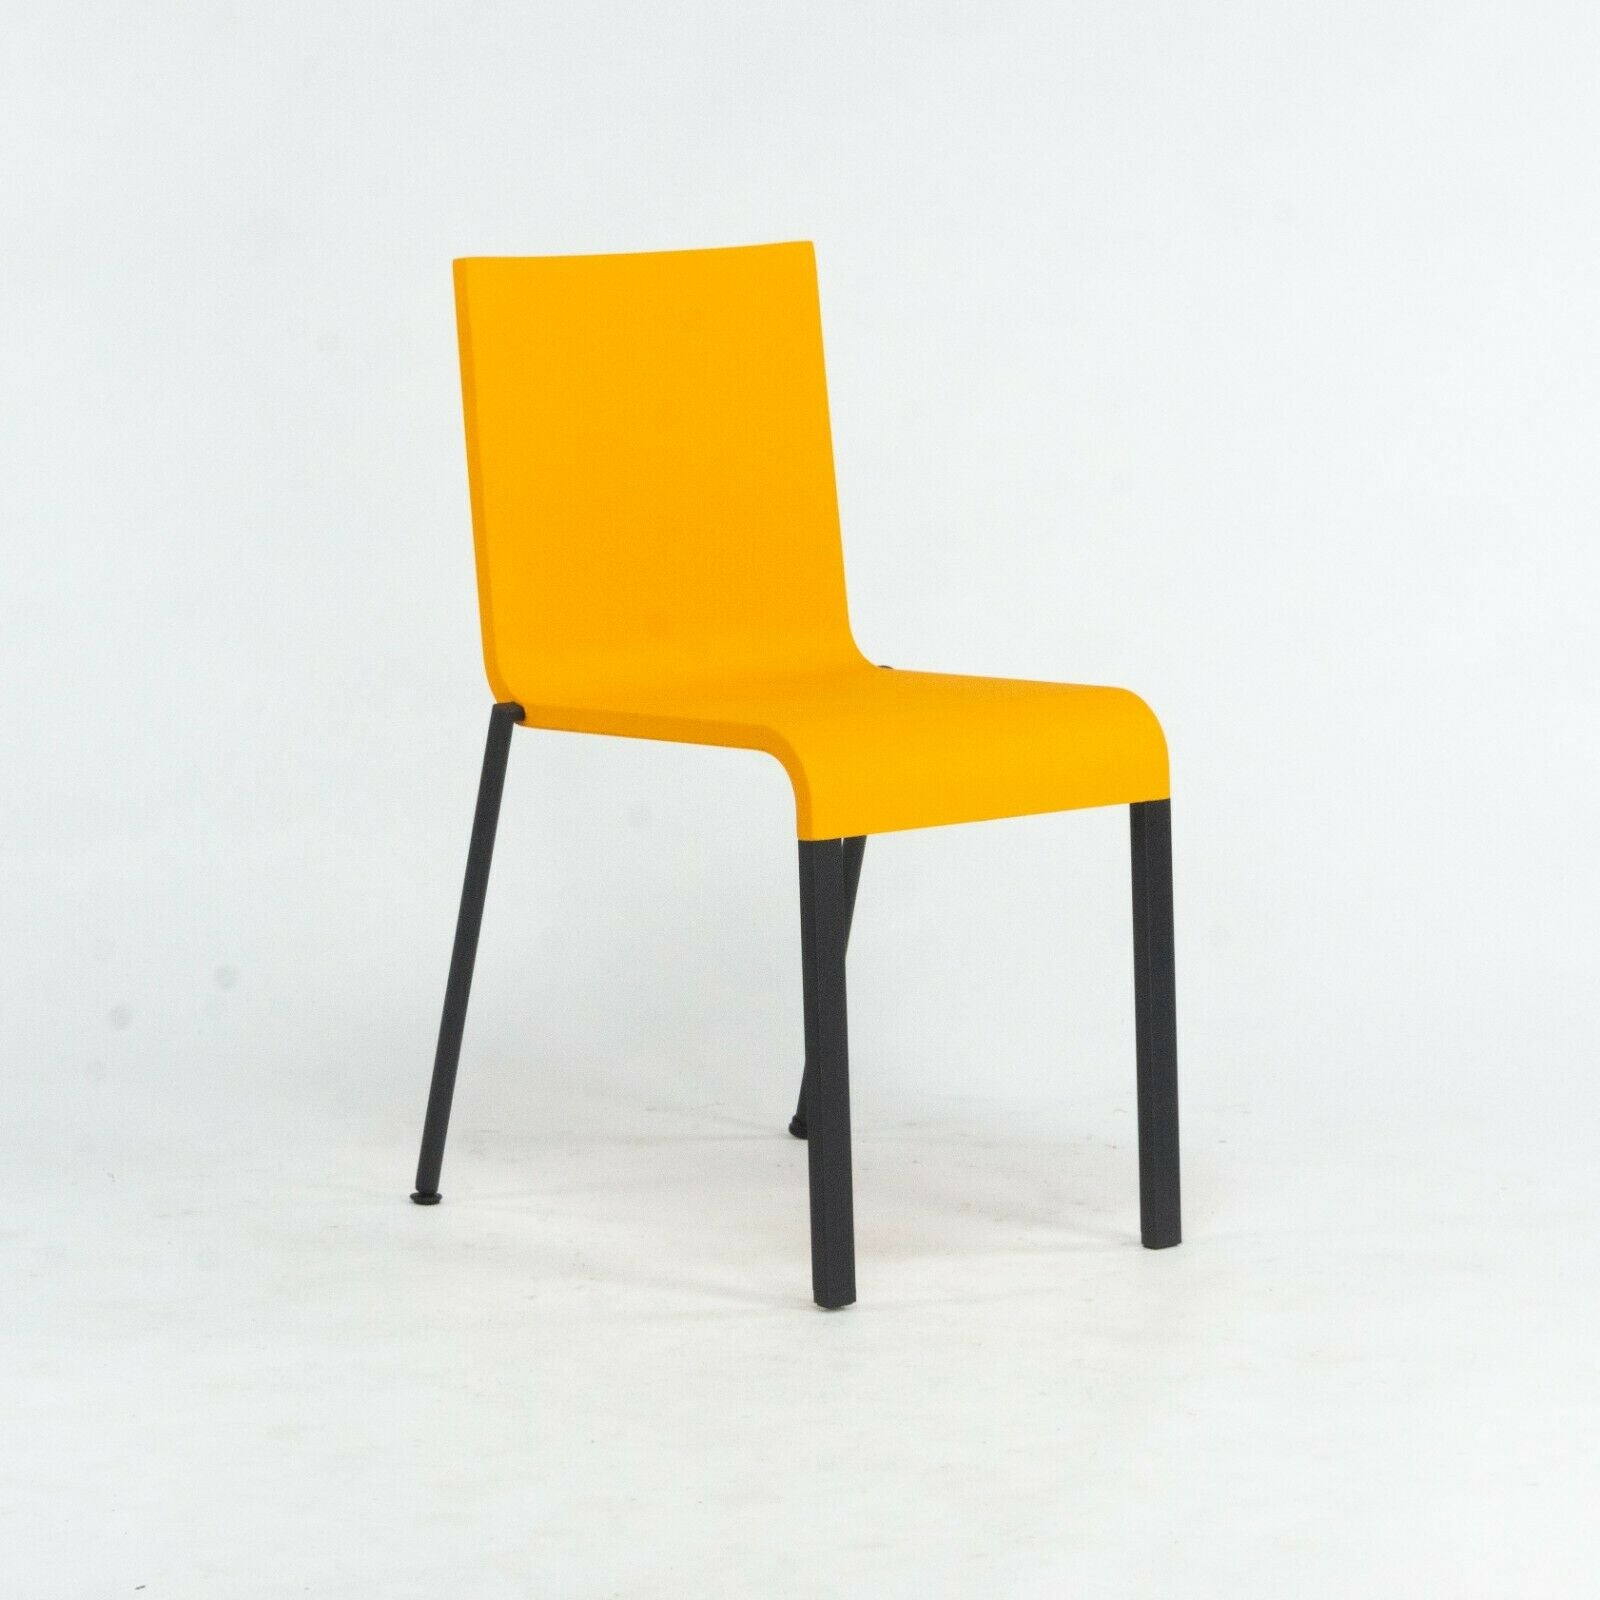 SOLD 2019 Maarten Van Severen .03 for Vitra Side Chair in Orange with Black Legs